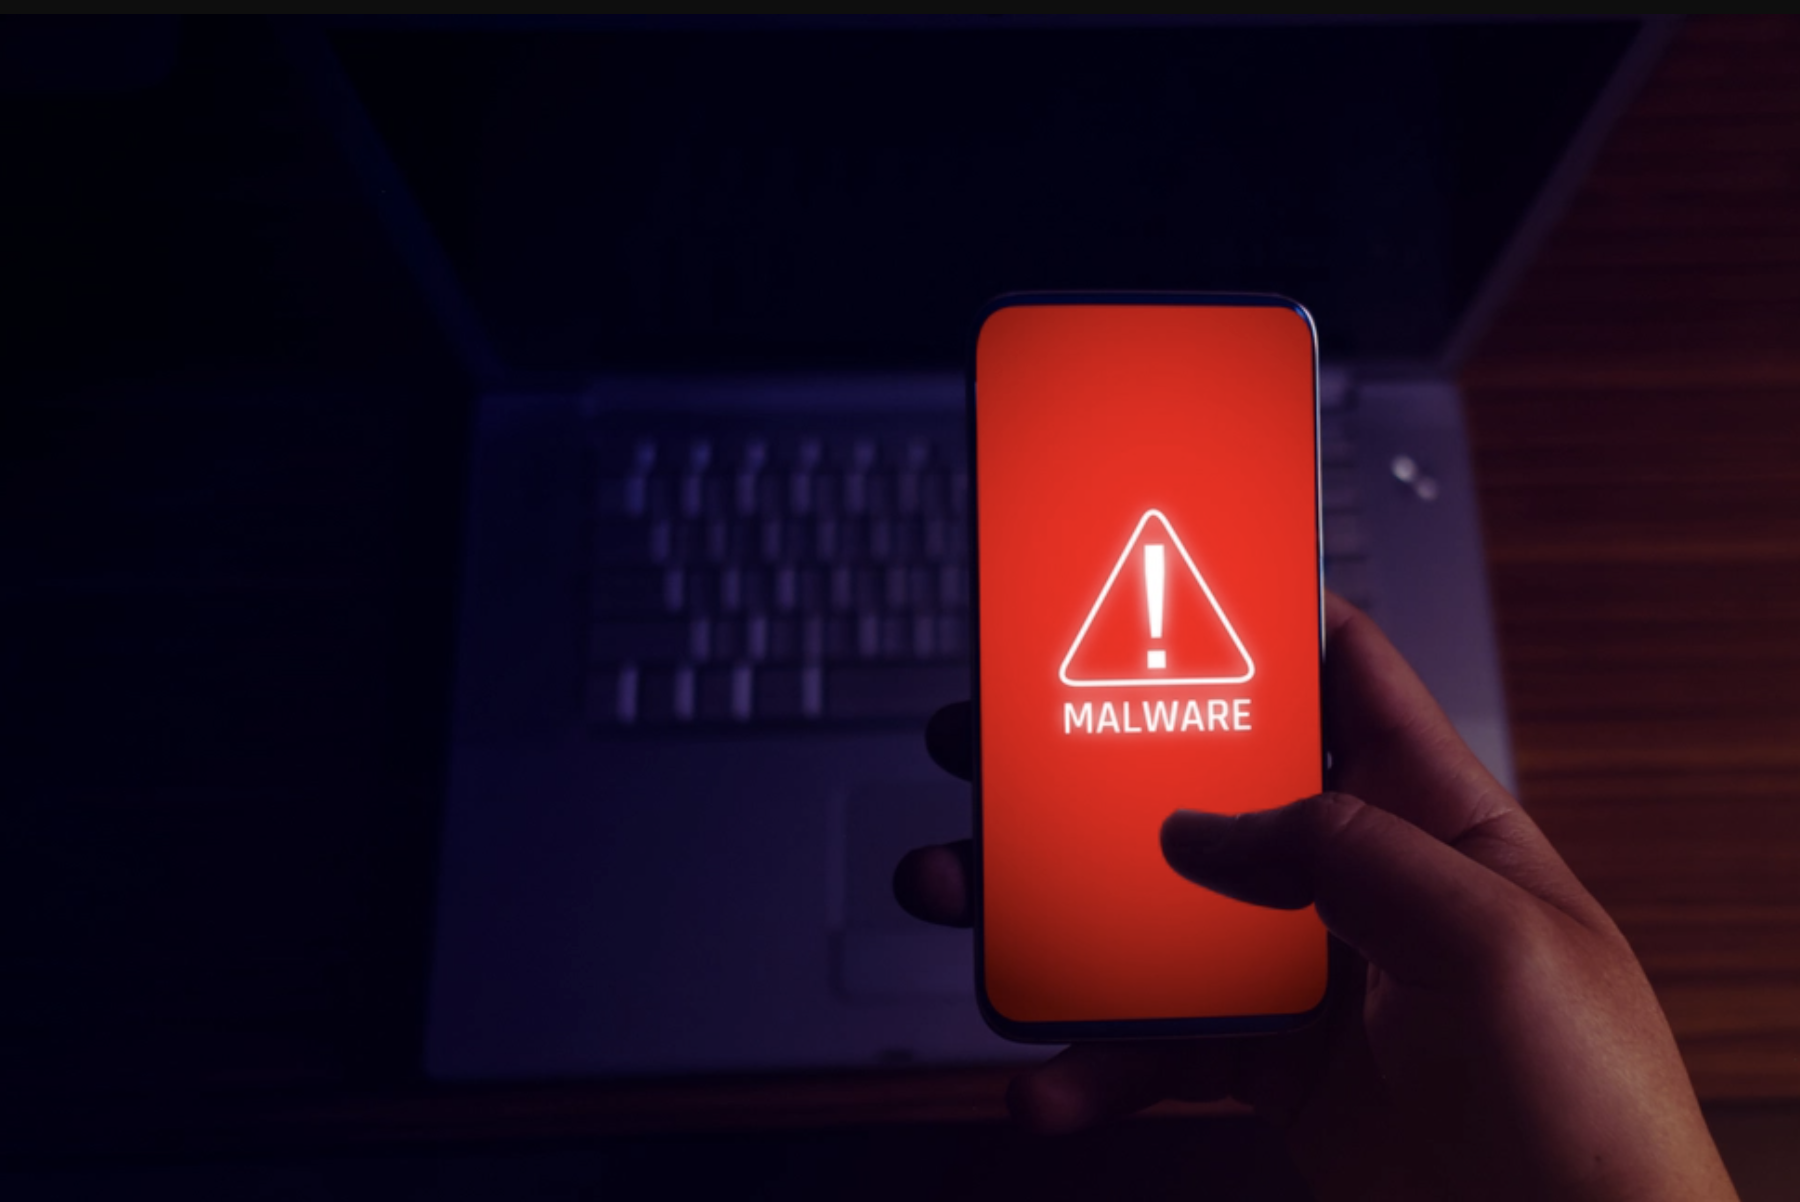 Ce nouveau malware dérobe vos coordonnées bancaires sur votre téléphone